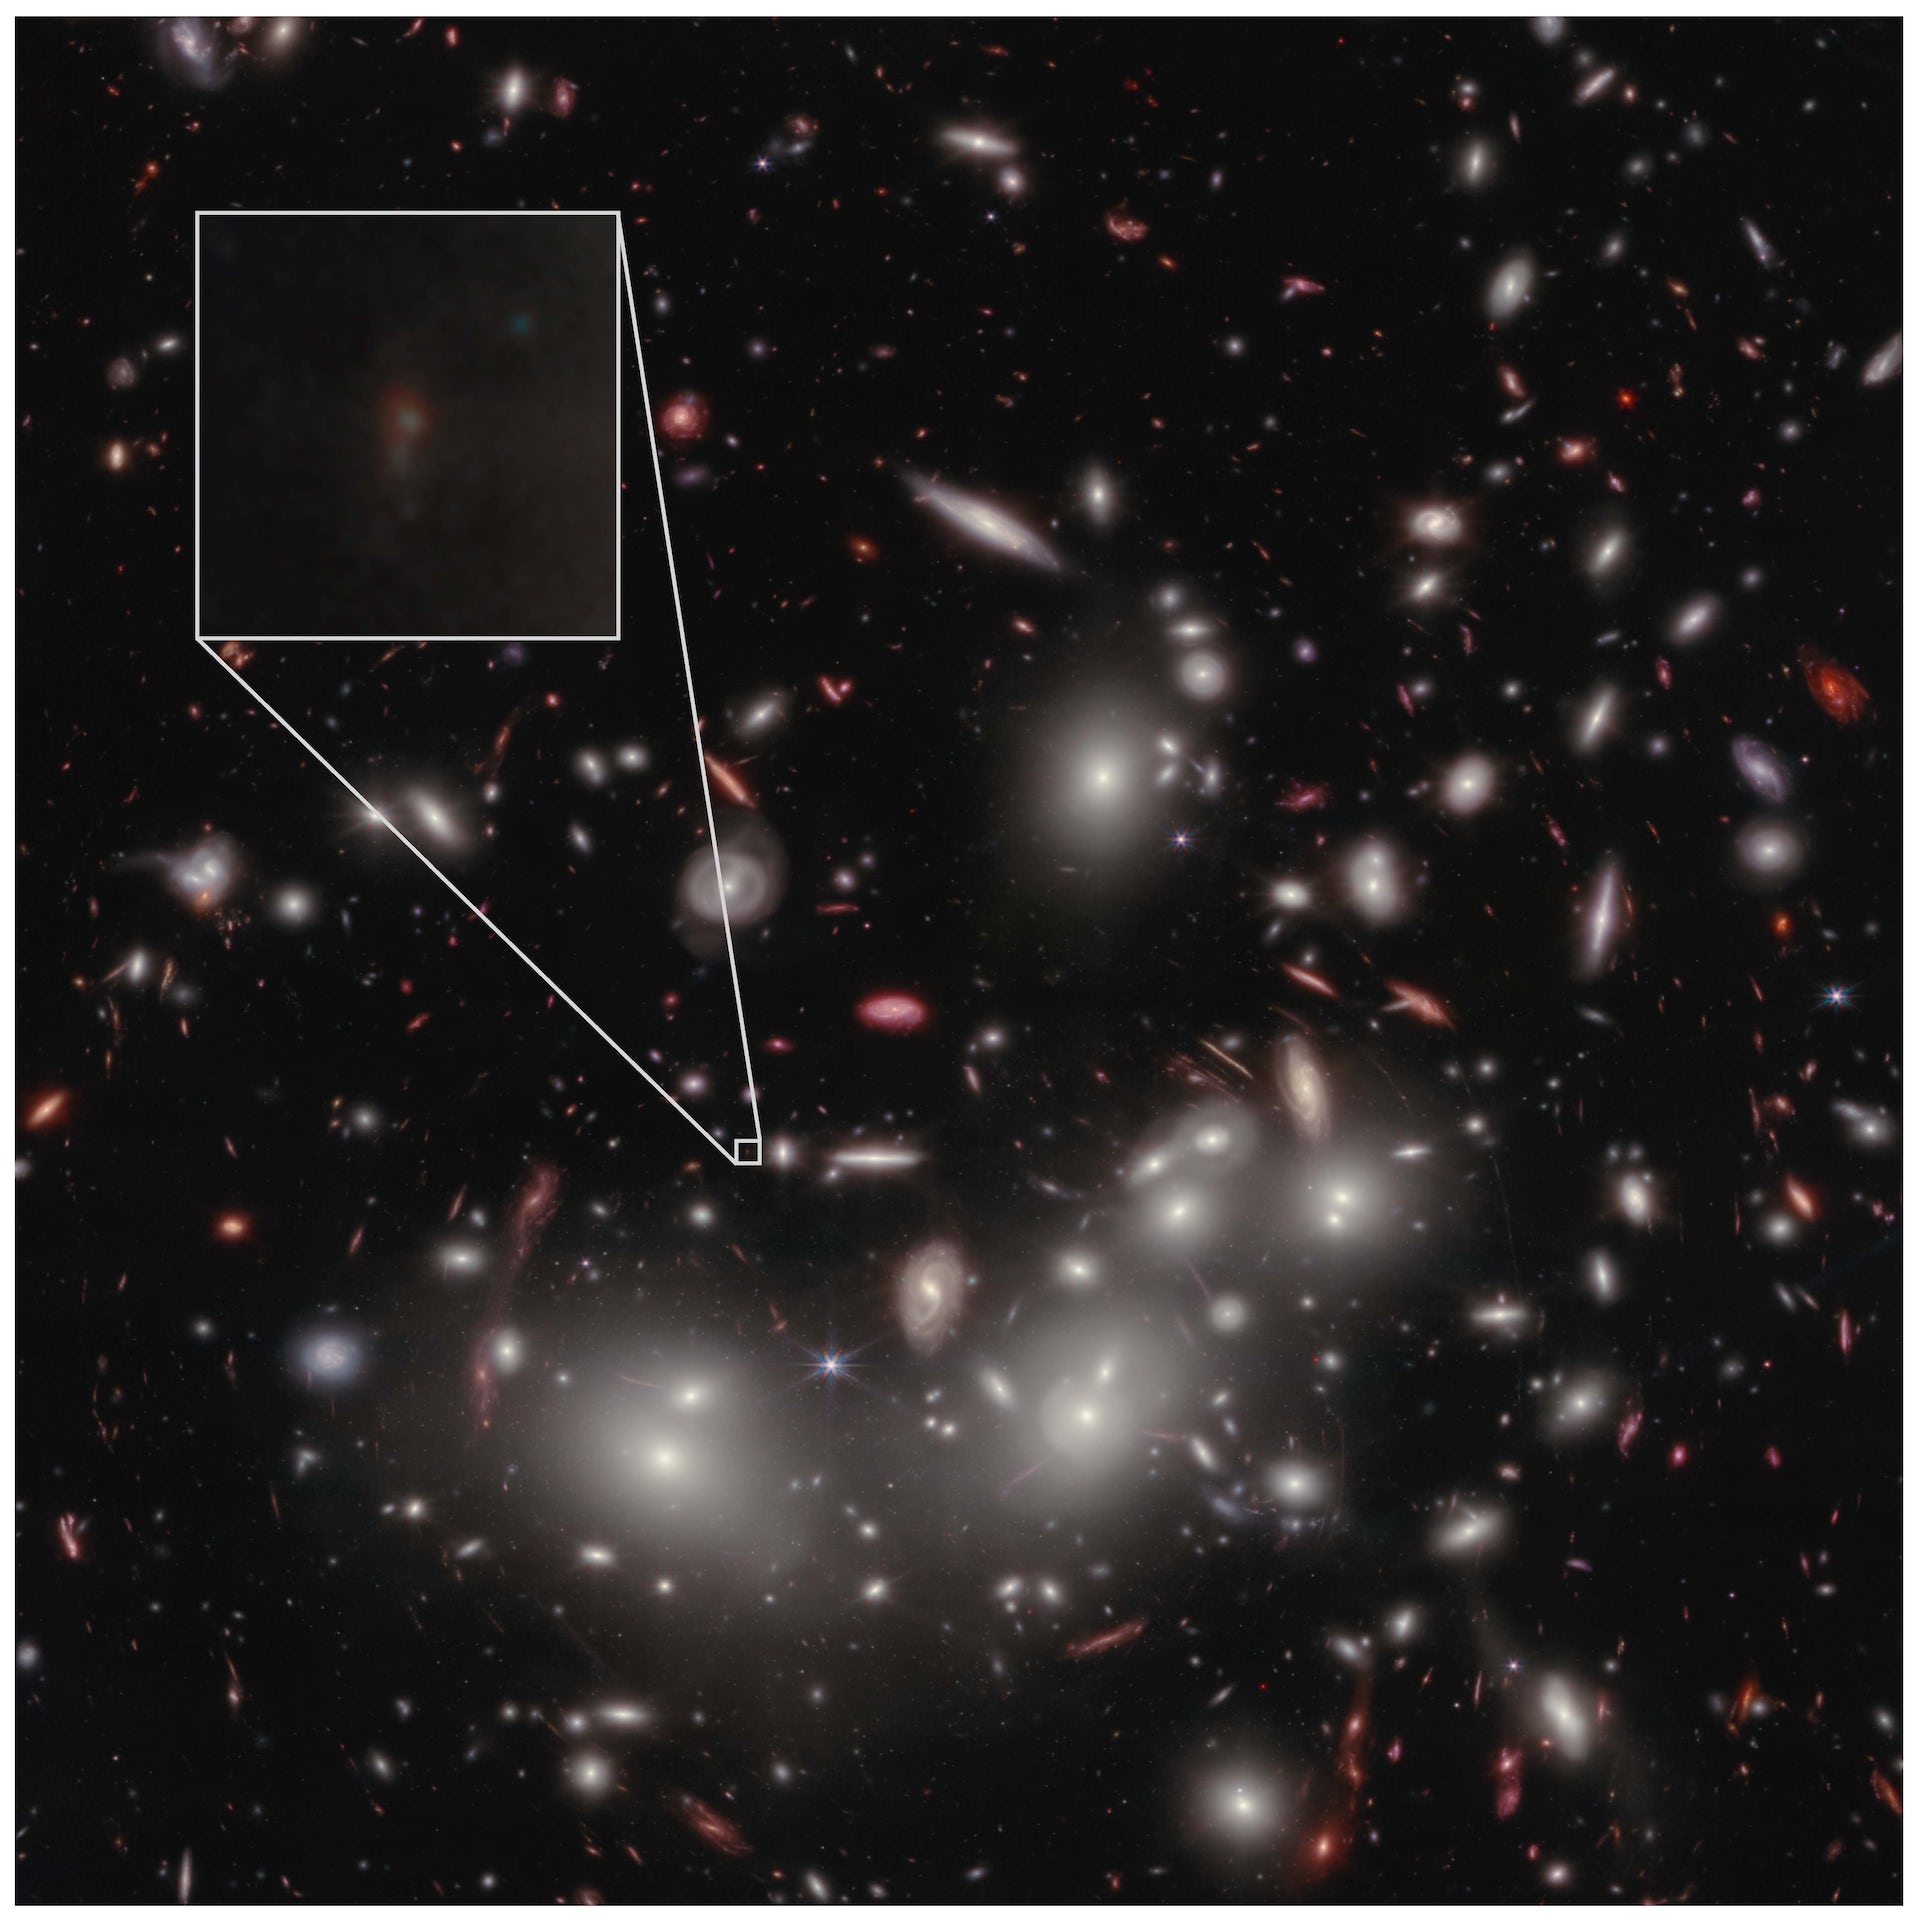 Έντονα φώτα (γαλαξίες και λίγα αστέρια) σε ένα σκοτεινό φόντο του ουρανού. Ένας αμυδρός γαλαξίας εμφανίζεται σε ένα μεγεθυμένο πλαίσιο ως αμυδρή μουντζούρα.